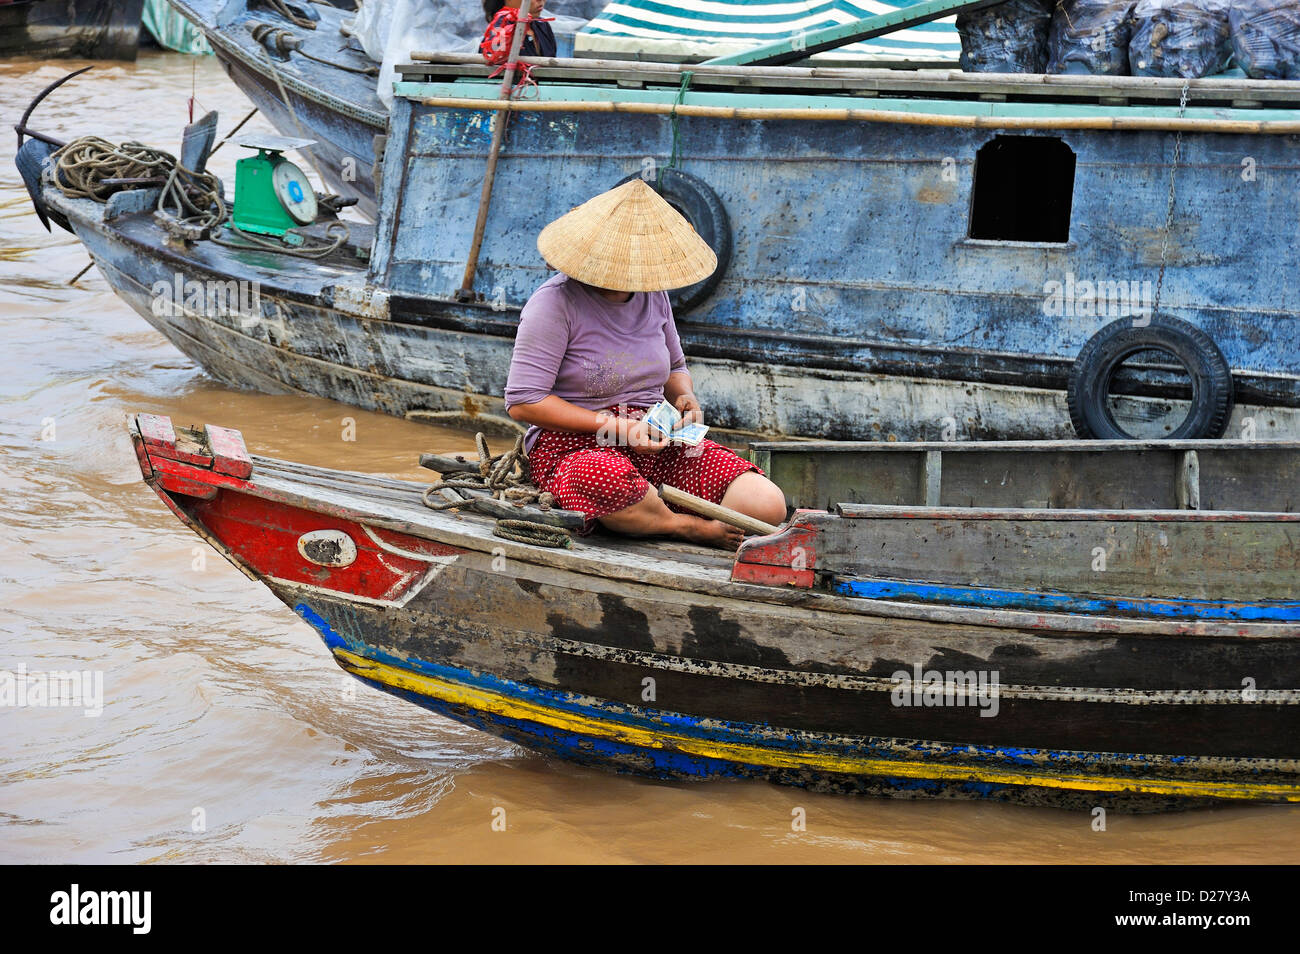 Mekong, Vietnam, province de Tien Giang - Femme sur un bateau d'argent comptant Banque D'Images